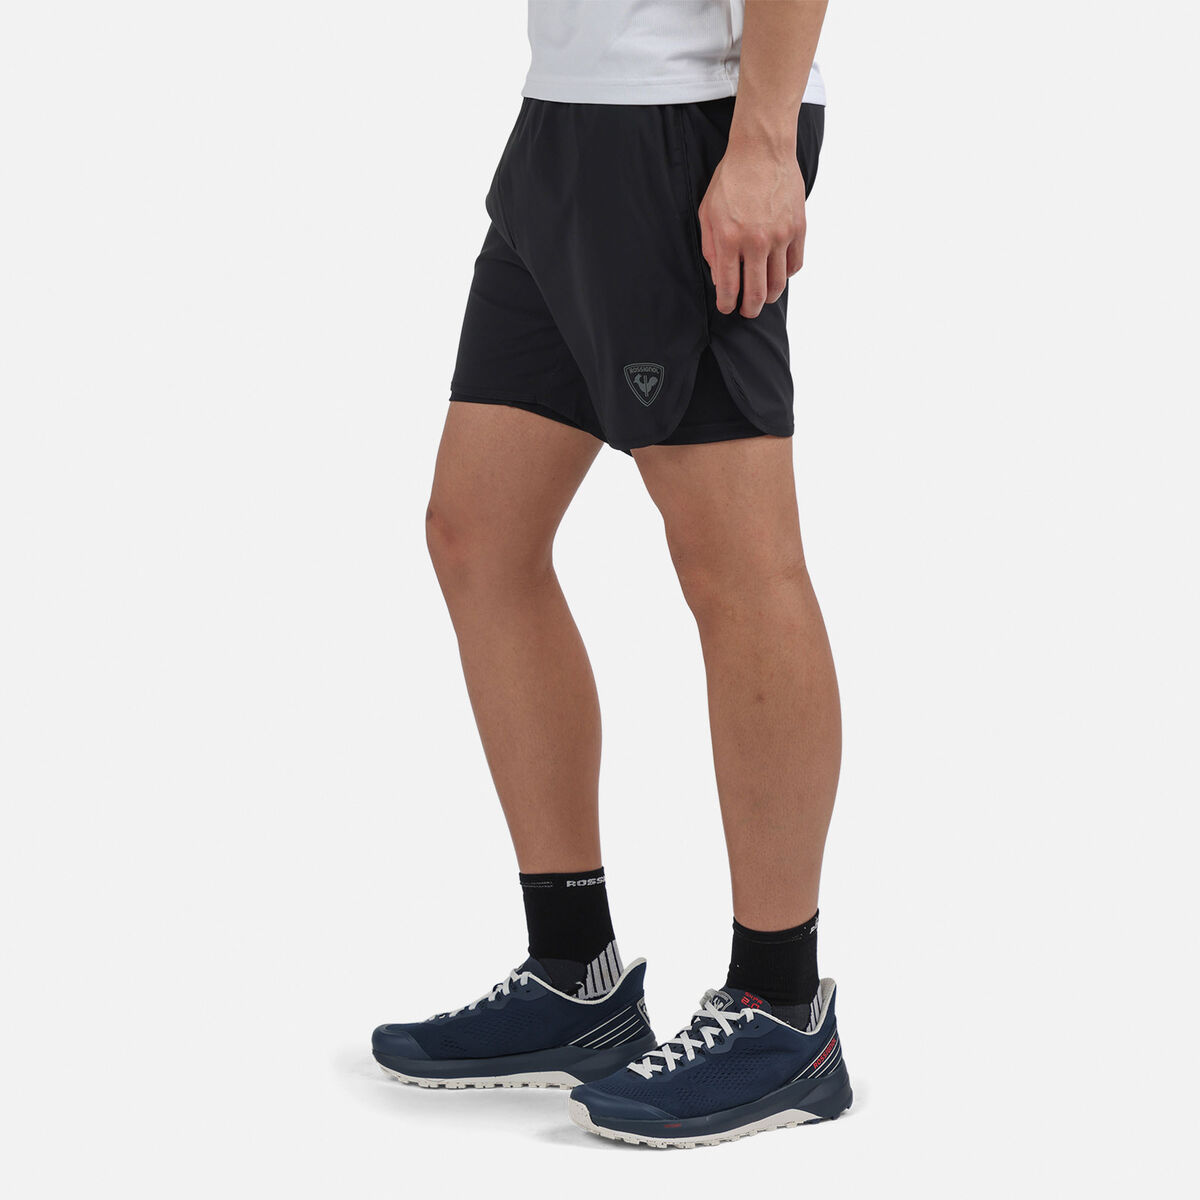 Rossignol Men's 2-in-1 Active Shorts black